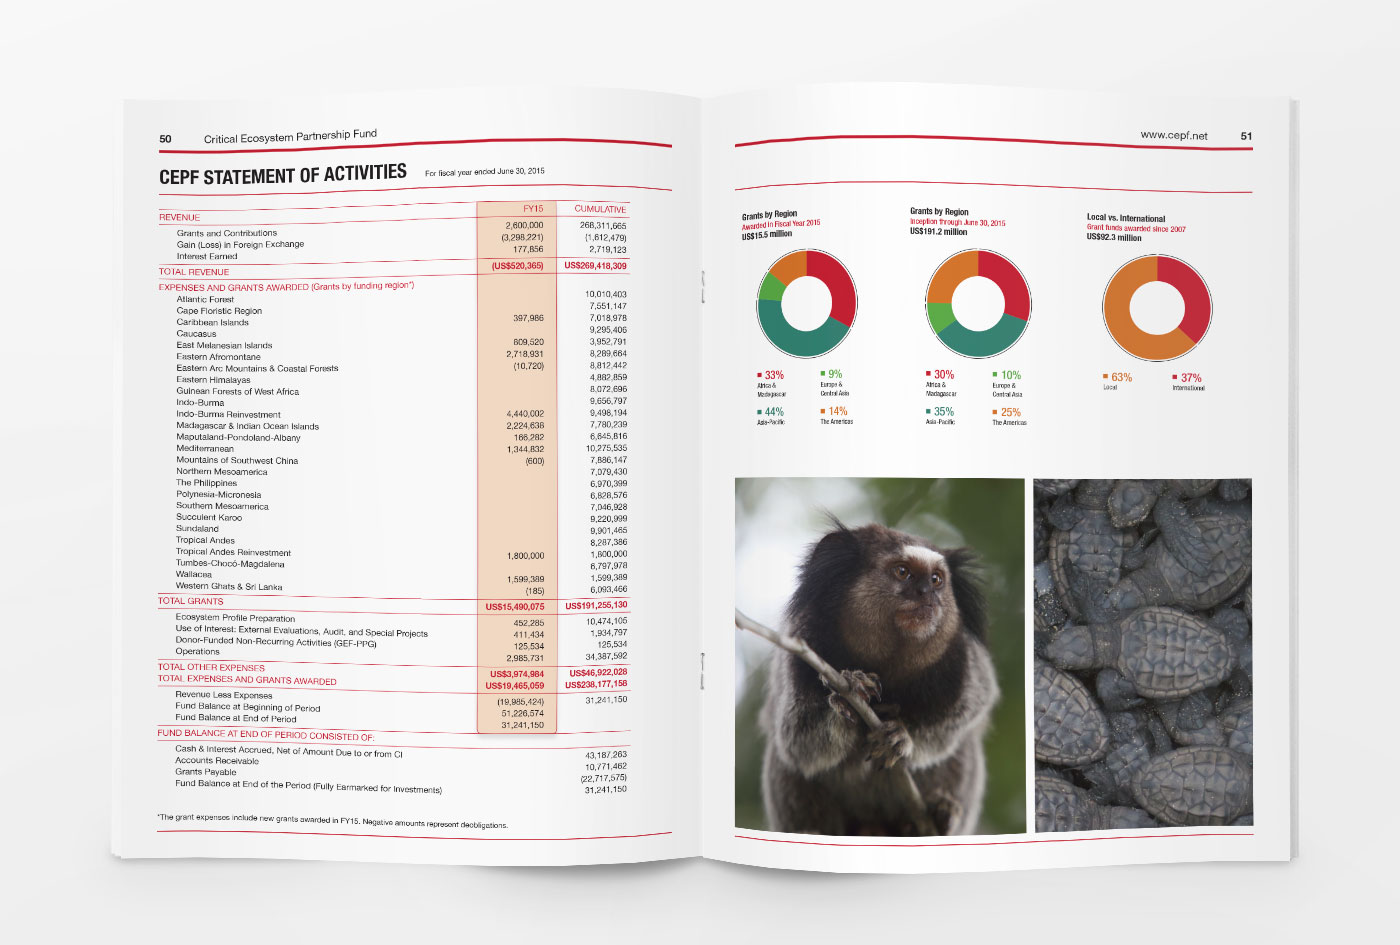 CEPF 2015 Annual Report